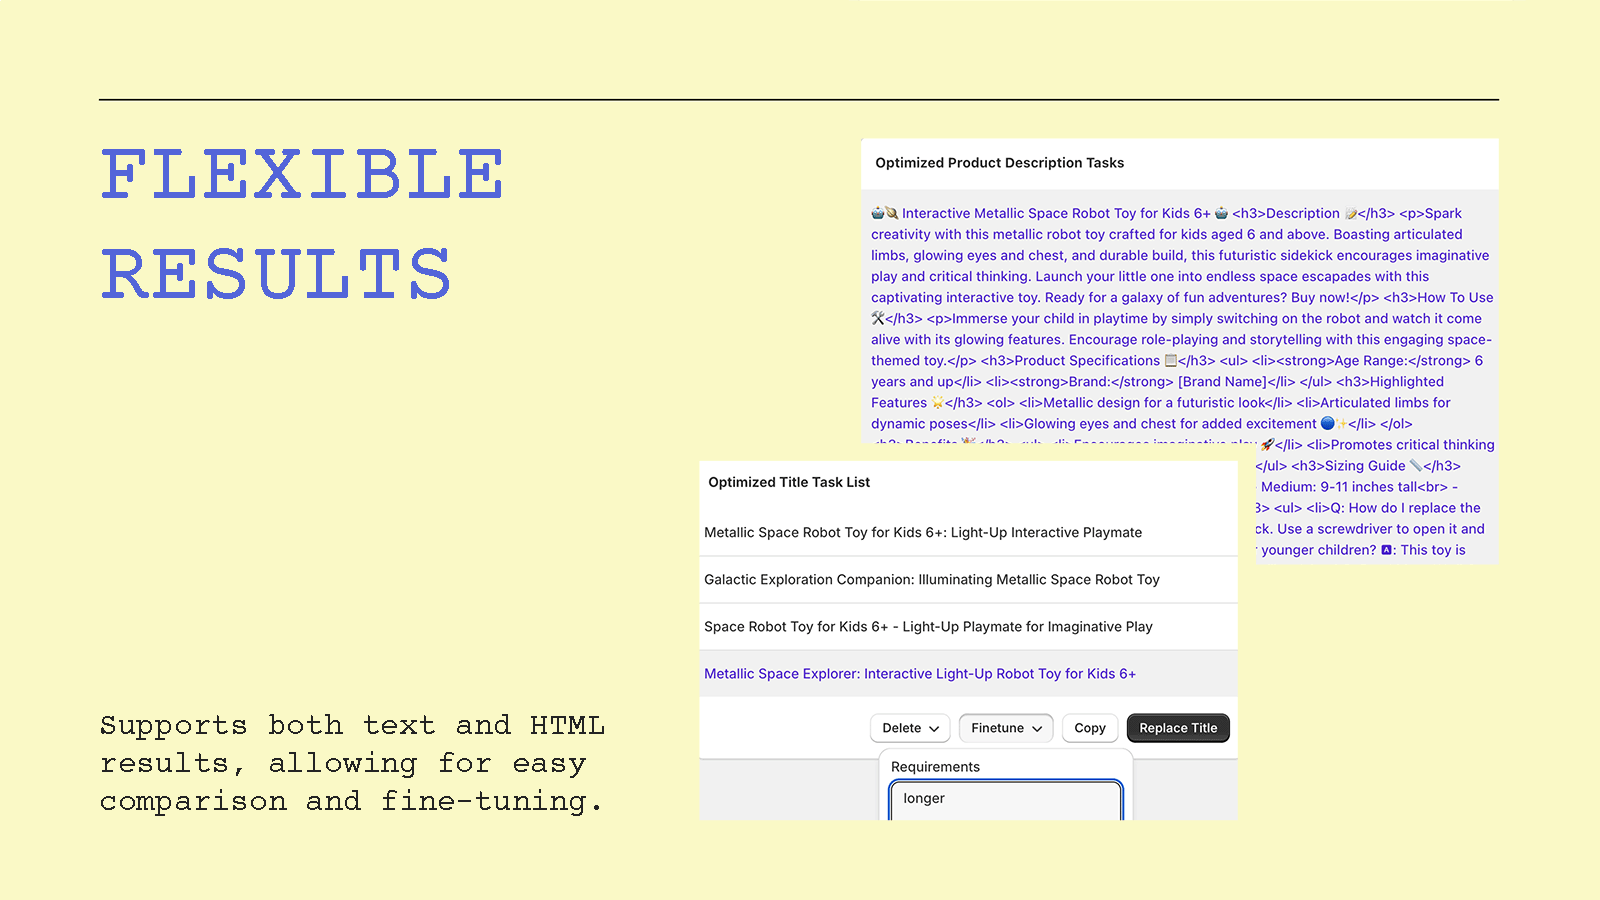 Resultaten in tekst & HTML voor eenvoudige vergelijking.